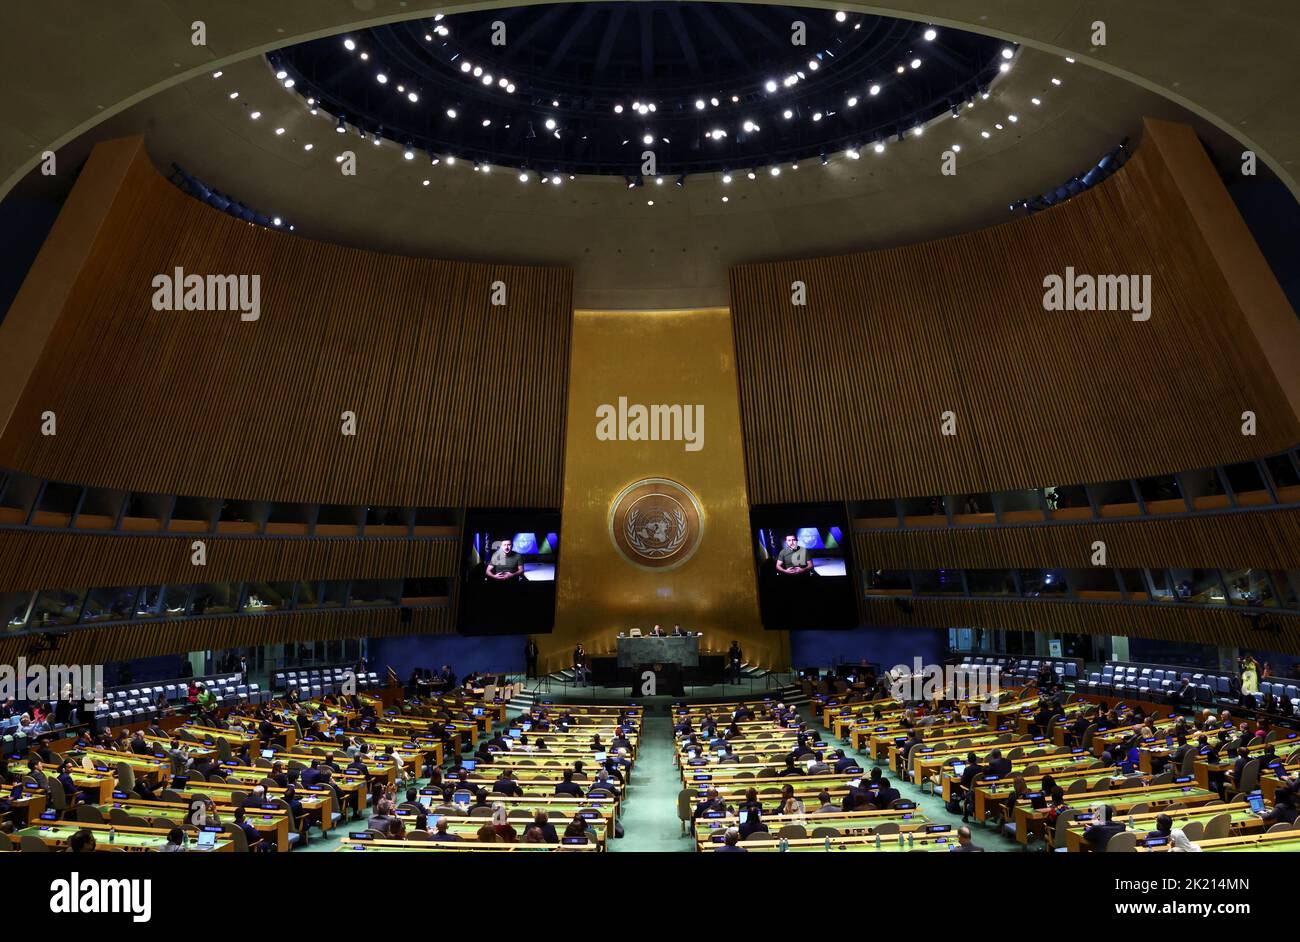 El presidente de Ucrania, Volodymyr Zelenskiy, está fotografiado en pantallas de video mientras pronuncia un discurso grabado en la 77th Sesión de la Asamblea General de las Naciones Unidas en la sede de la ONU en la ciudad de Nueva York, EE.UU., el 21 de septiembre de 2022. REUTERS/Mike Segar Foto de stock